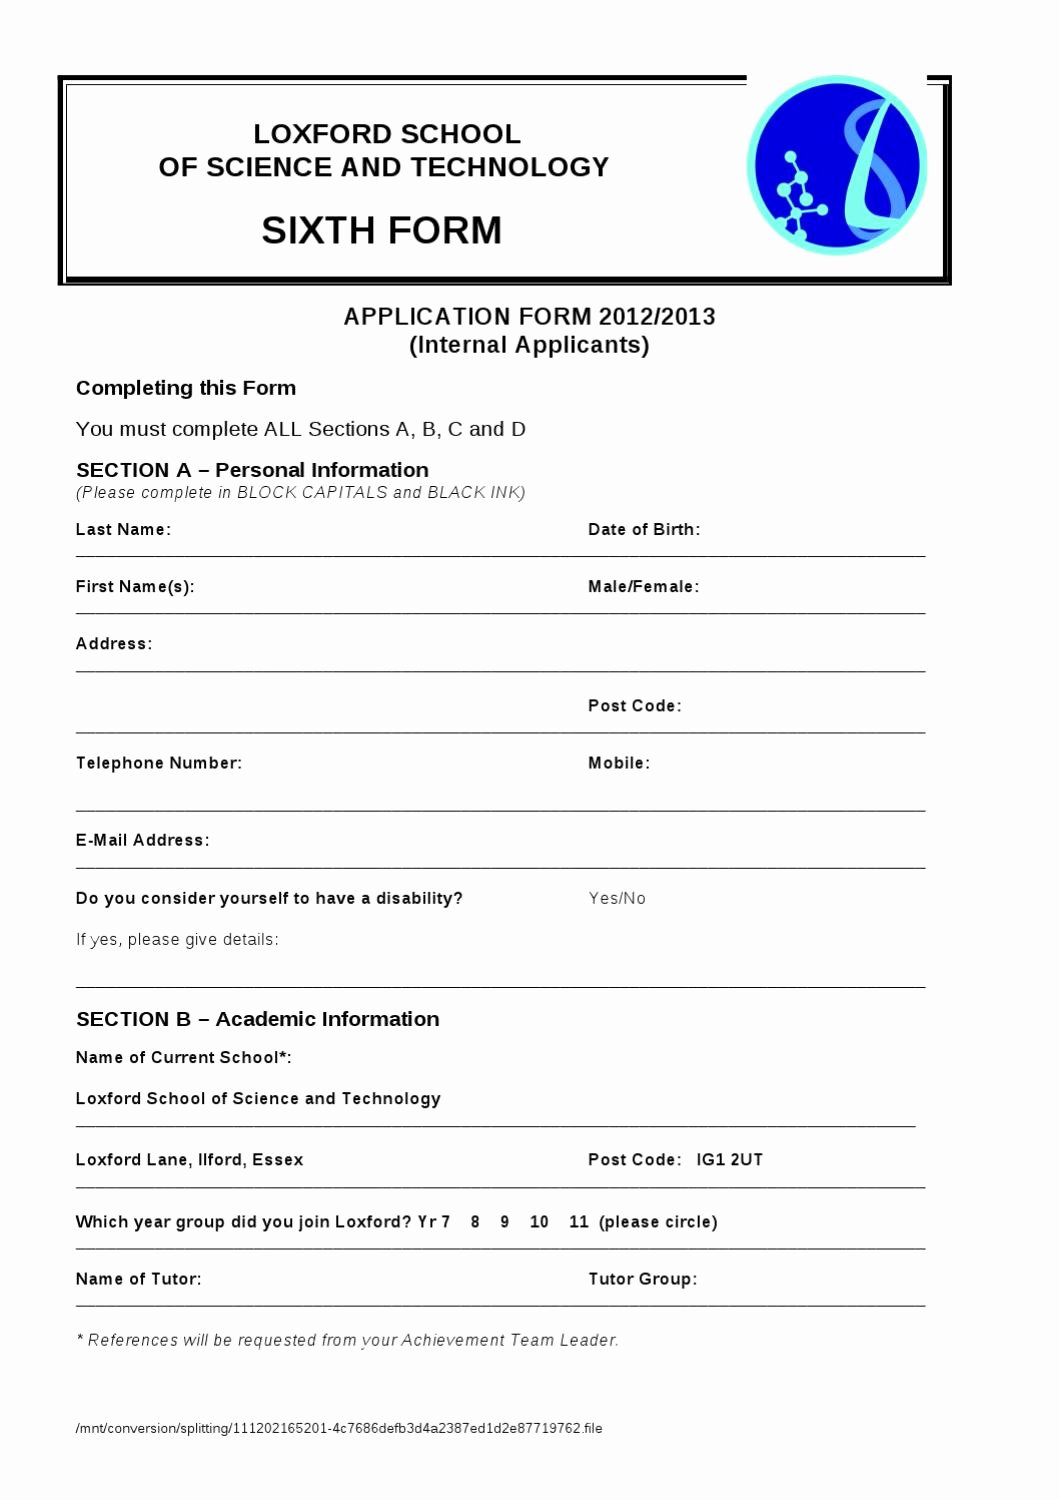 Internal Application form Fresh Application form 6th form Internal by Sitewrights issuu